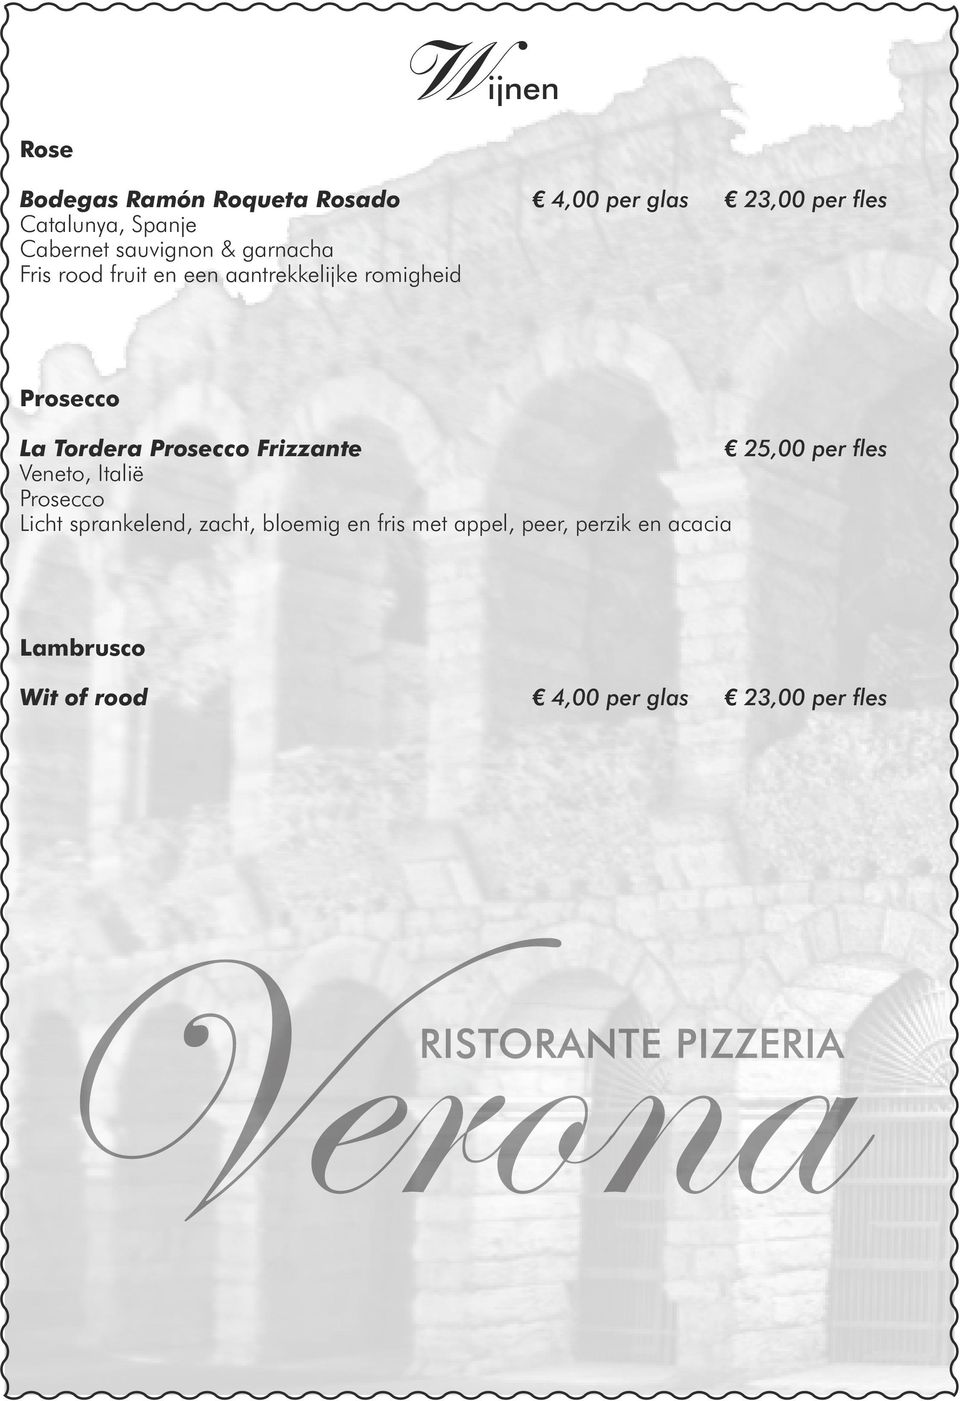 Tordera Prosecco Frizzante 25,00 per fles Veneto, Italië Prosecco Licht sprankelend, zacht,